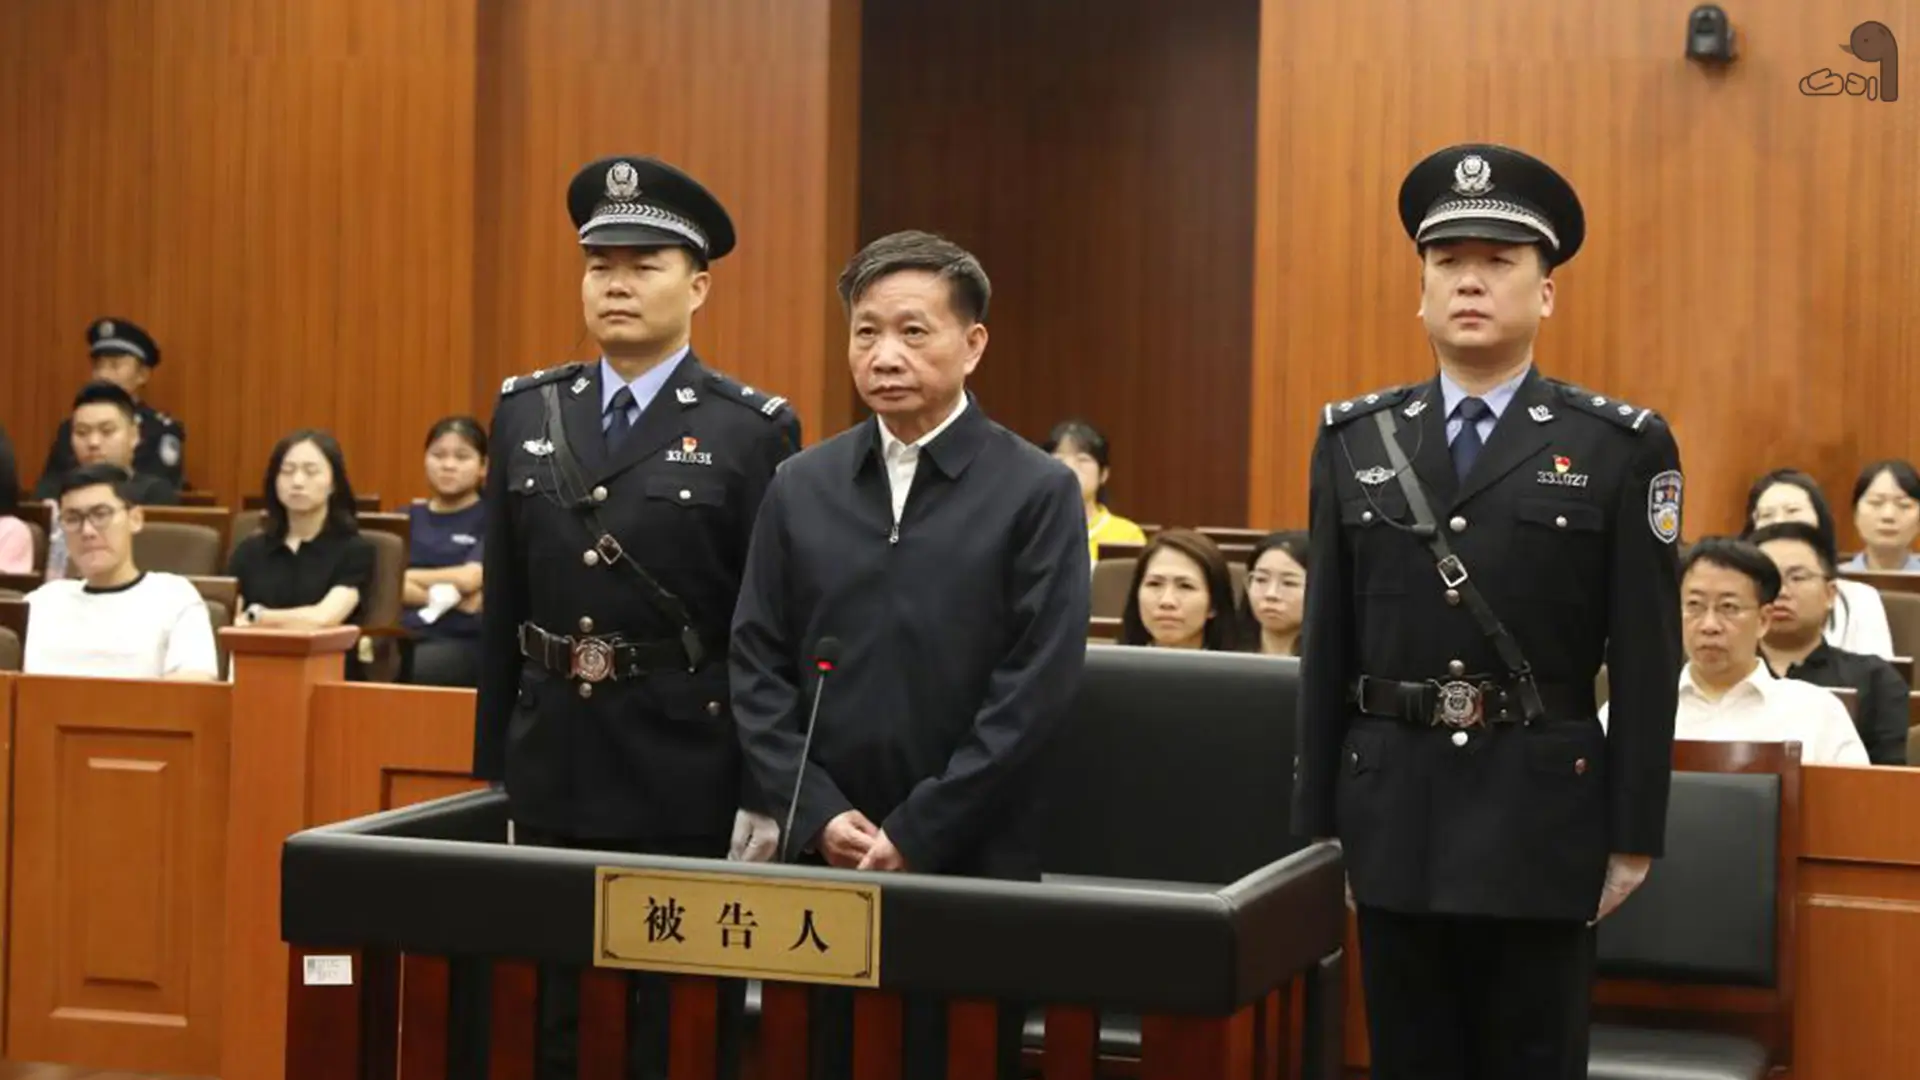 مقام چینی به_دلیل استخراج بیت کوین به حبس ابد محکوم شد - اردک دیجیتال